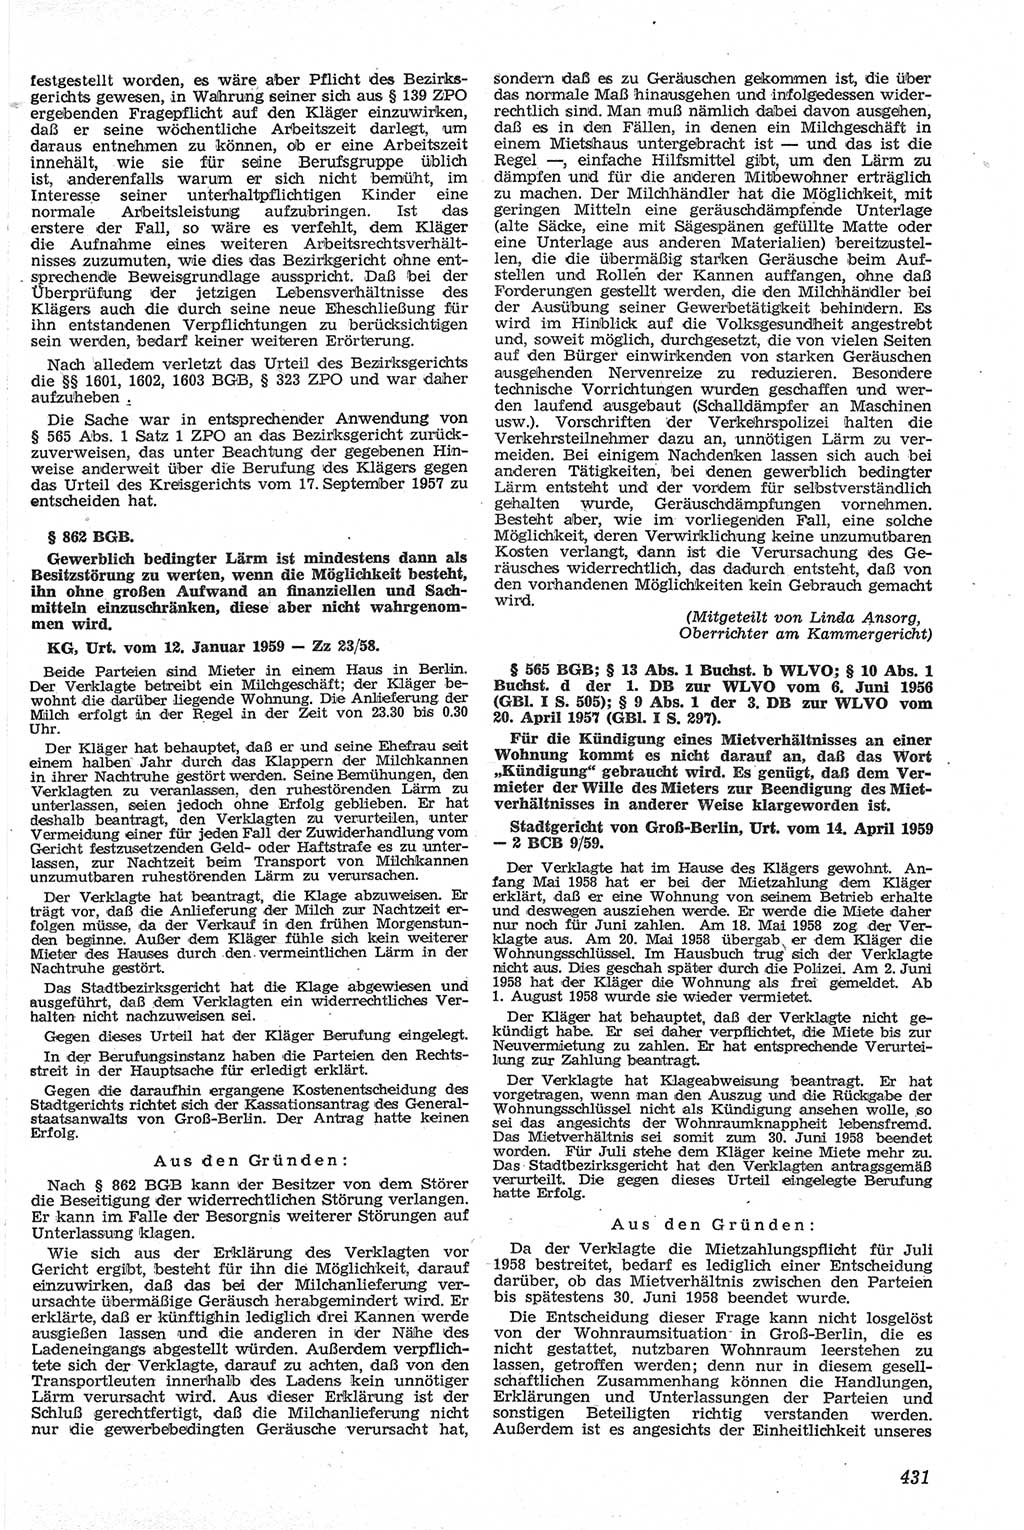 Neue Justiz (NJ), Zeitschrift für Recht und Rechtswissenschaft [Deutsche Demokratische Republik (DDR)], 13. Jahrgang 1959, Seite 431 (NJ DDR 1959, S. 431)